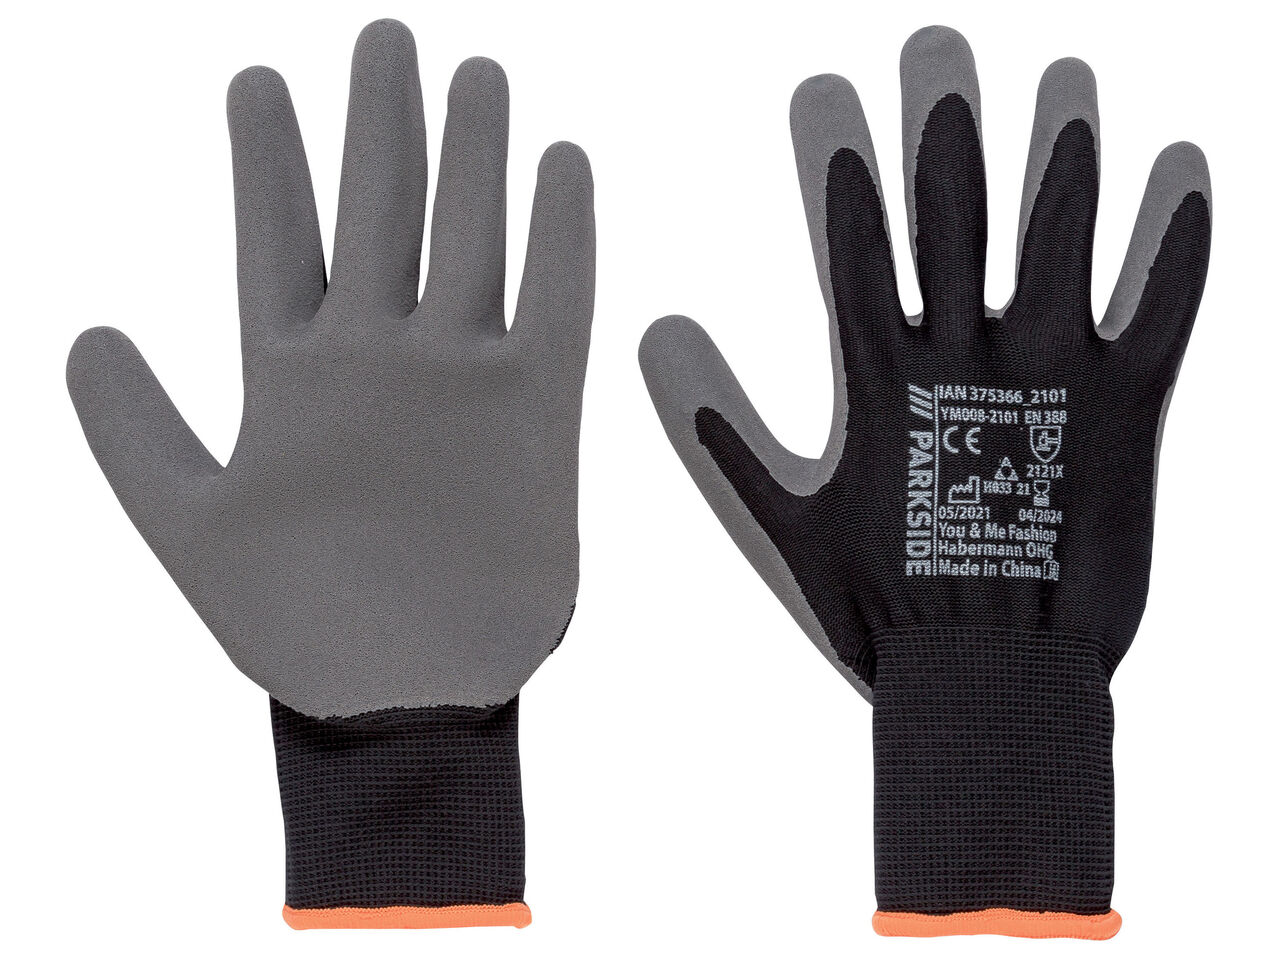 Rękawice robocze , cena 15,99 PLN 
Rękawice robocze 2 wzory 
- rozmiary: 7-11 
- ...